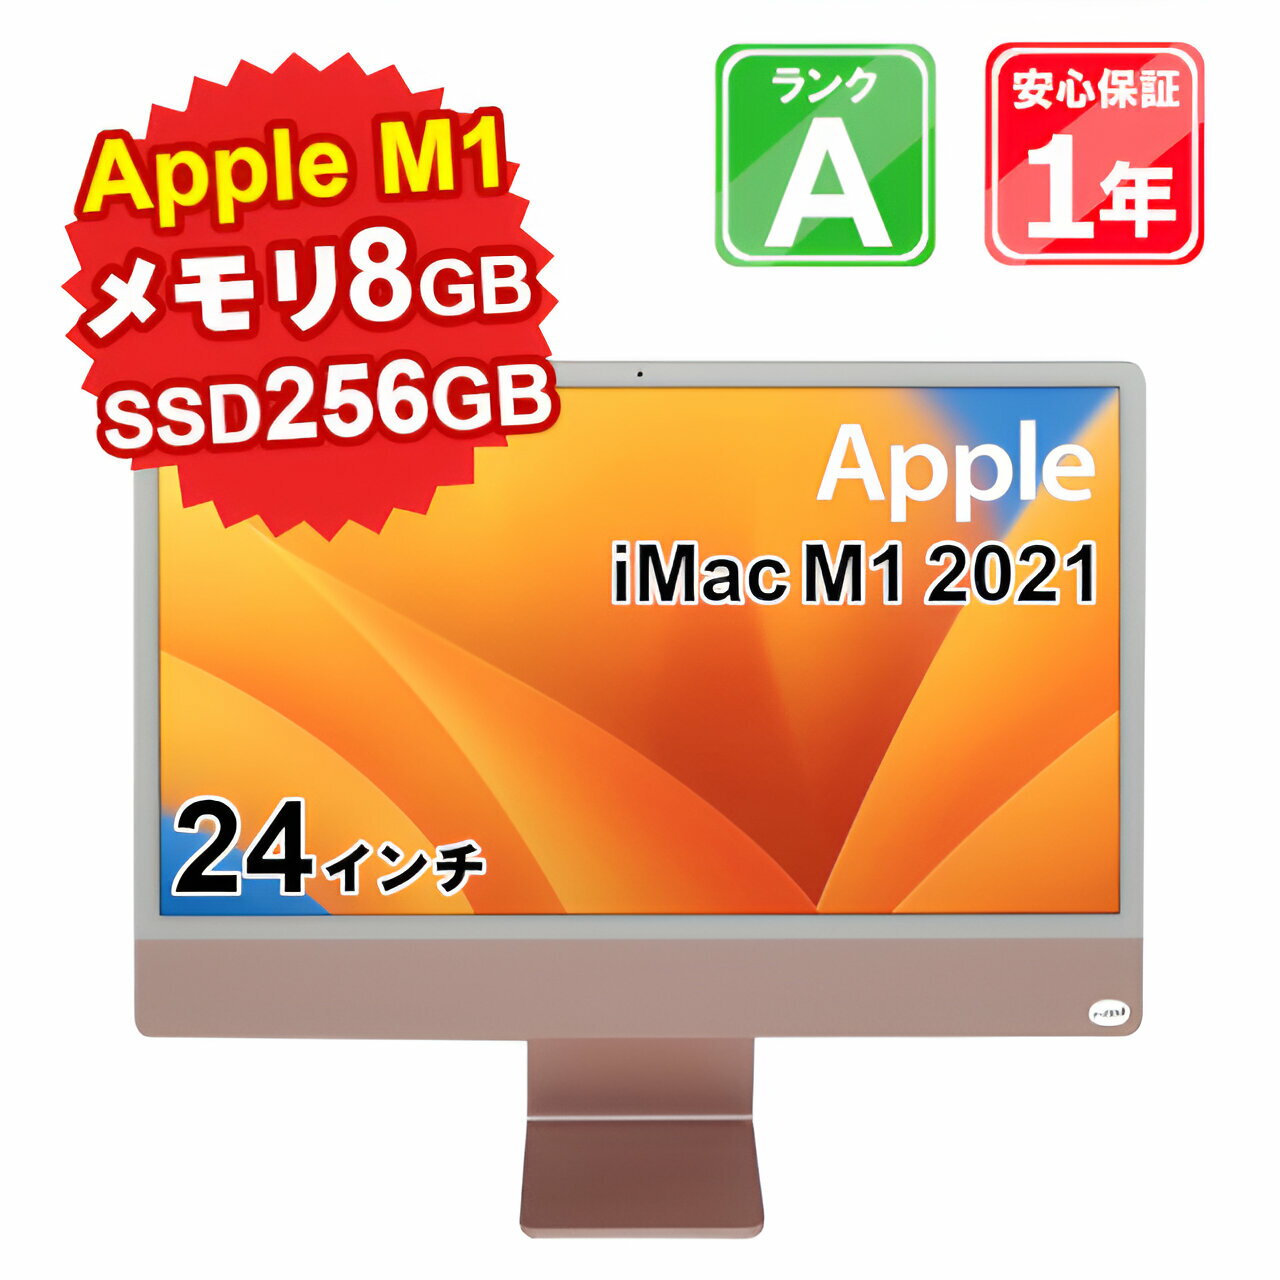 【中古】中古 パソコン デスクトップパソコン Apple iMac M1 2021 A2438 Apple M1 メモリ8GB SSD256GB 24インチ Mac OS Ventura WebCamera有 1年保証 【大阪出荷】【ヤマダ ホールディングスグループ】